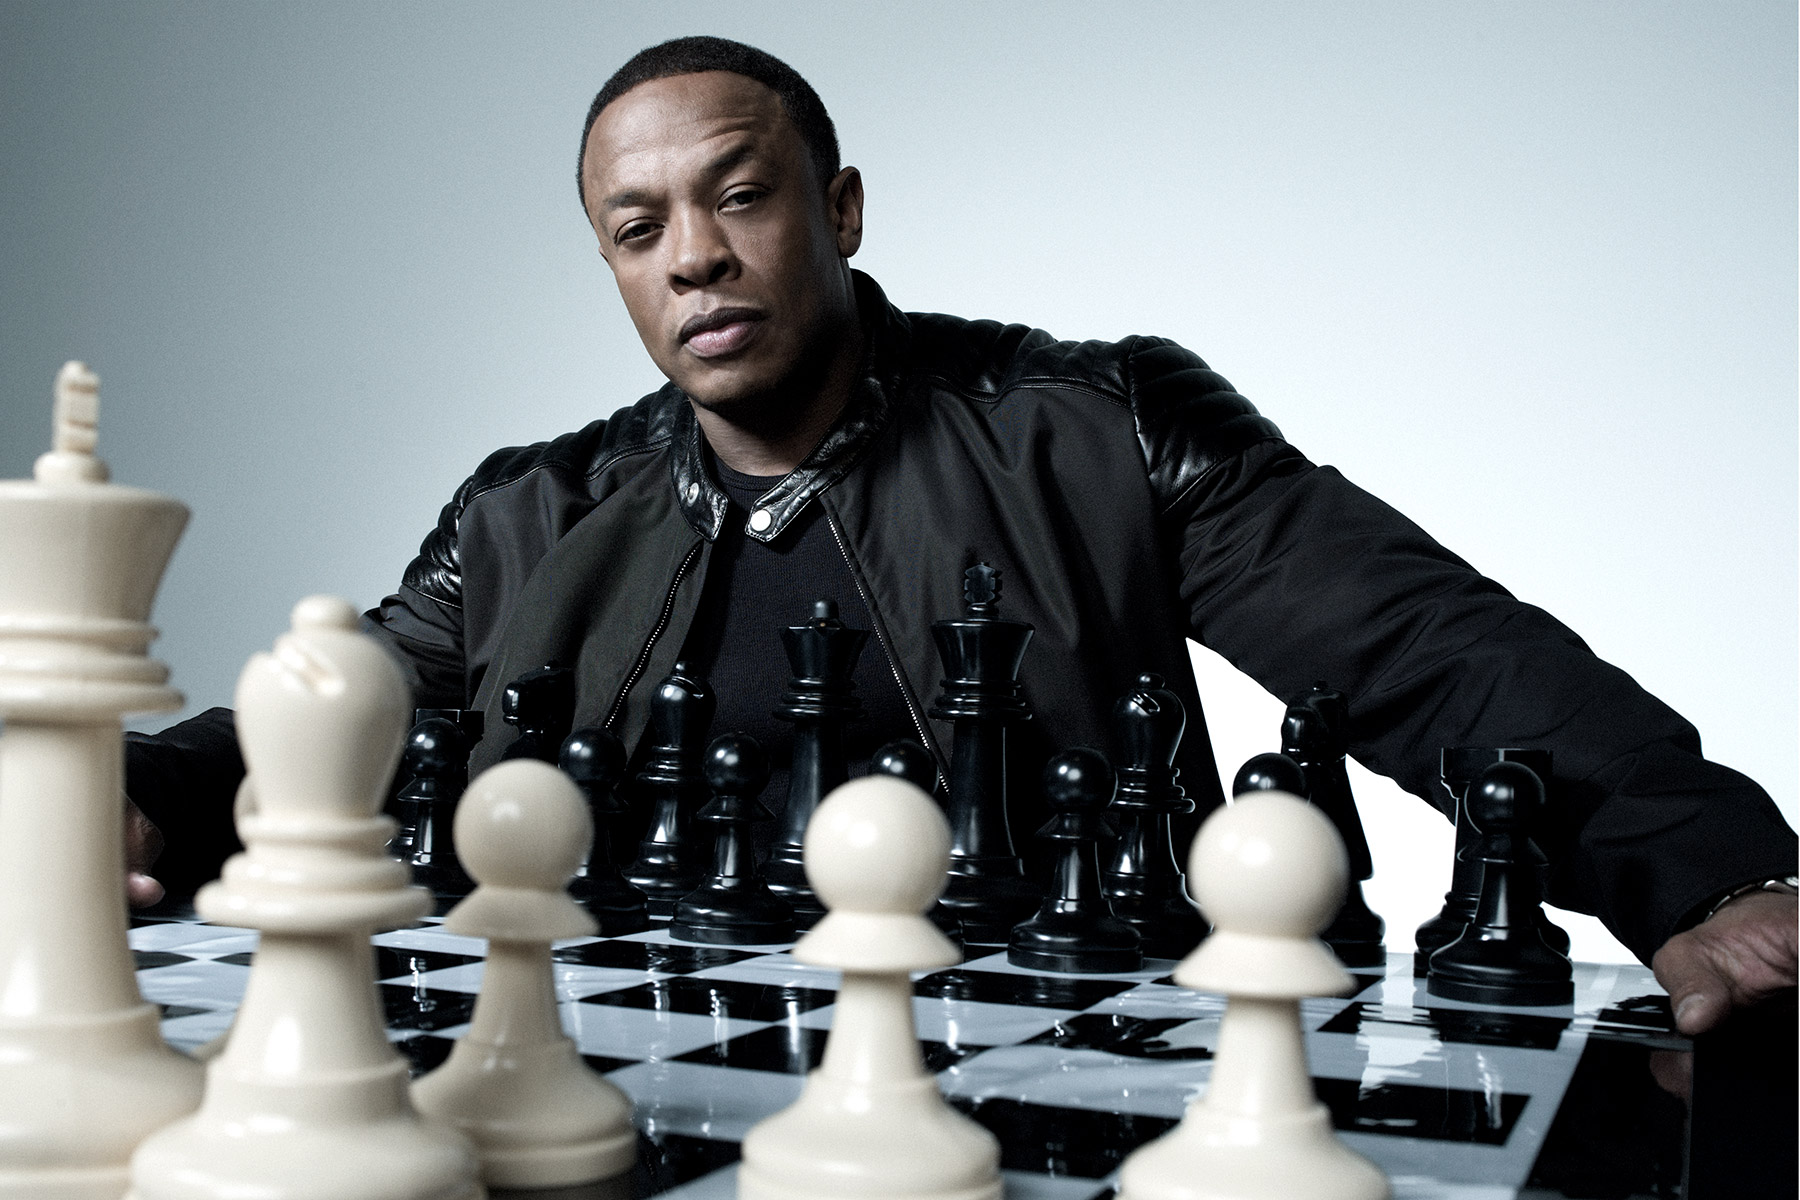 Portraits of Dr. Dre photographed by Scott Council